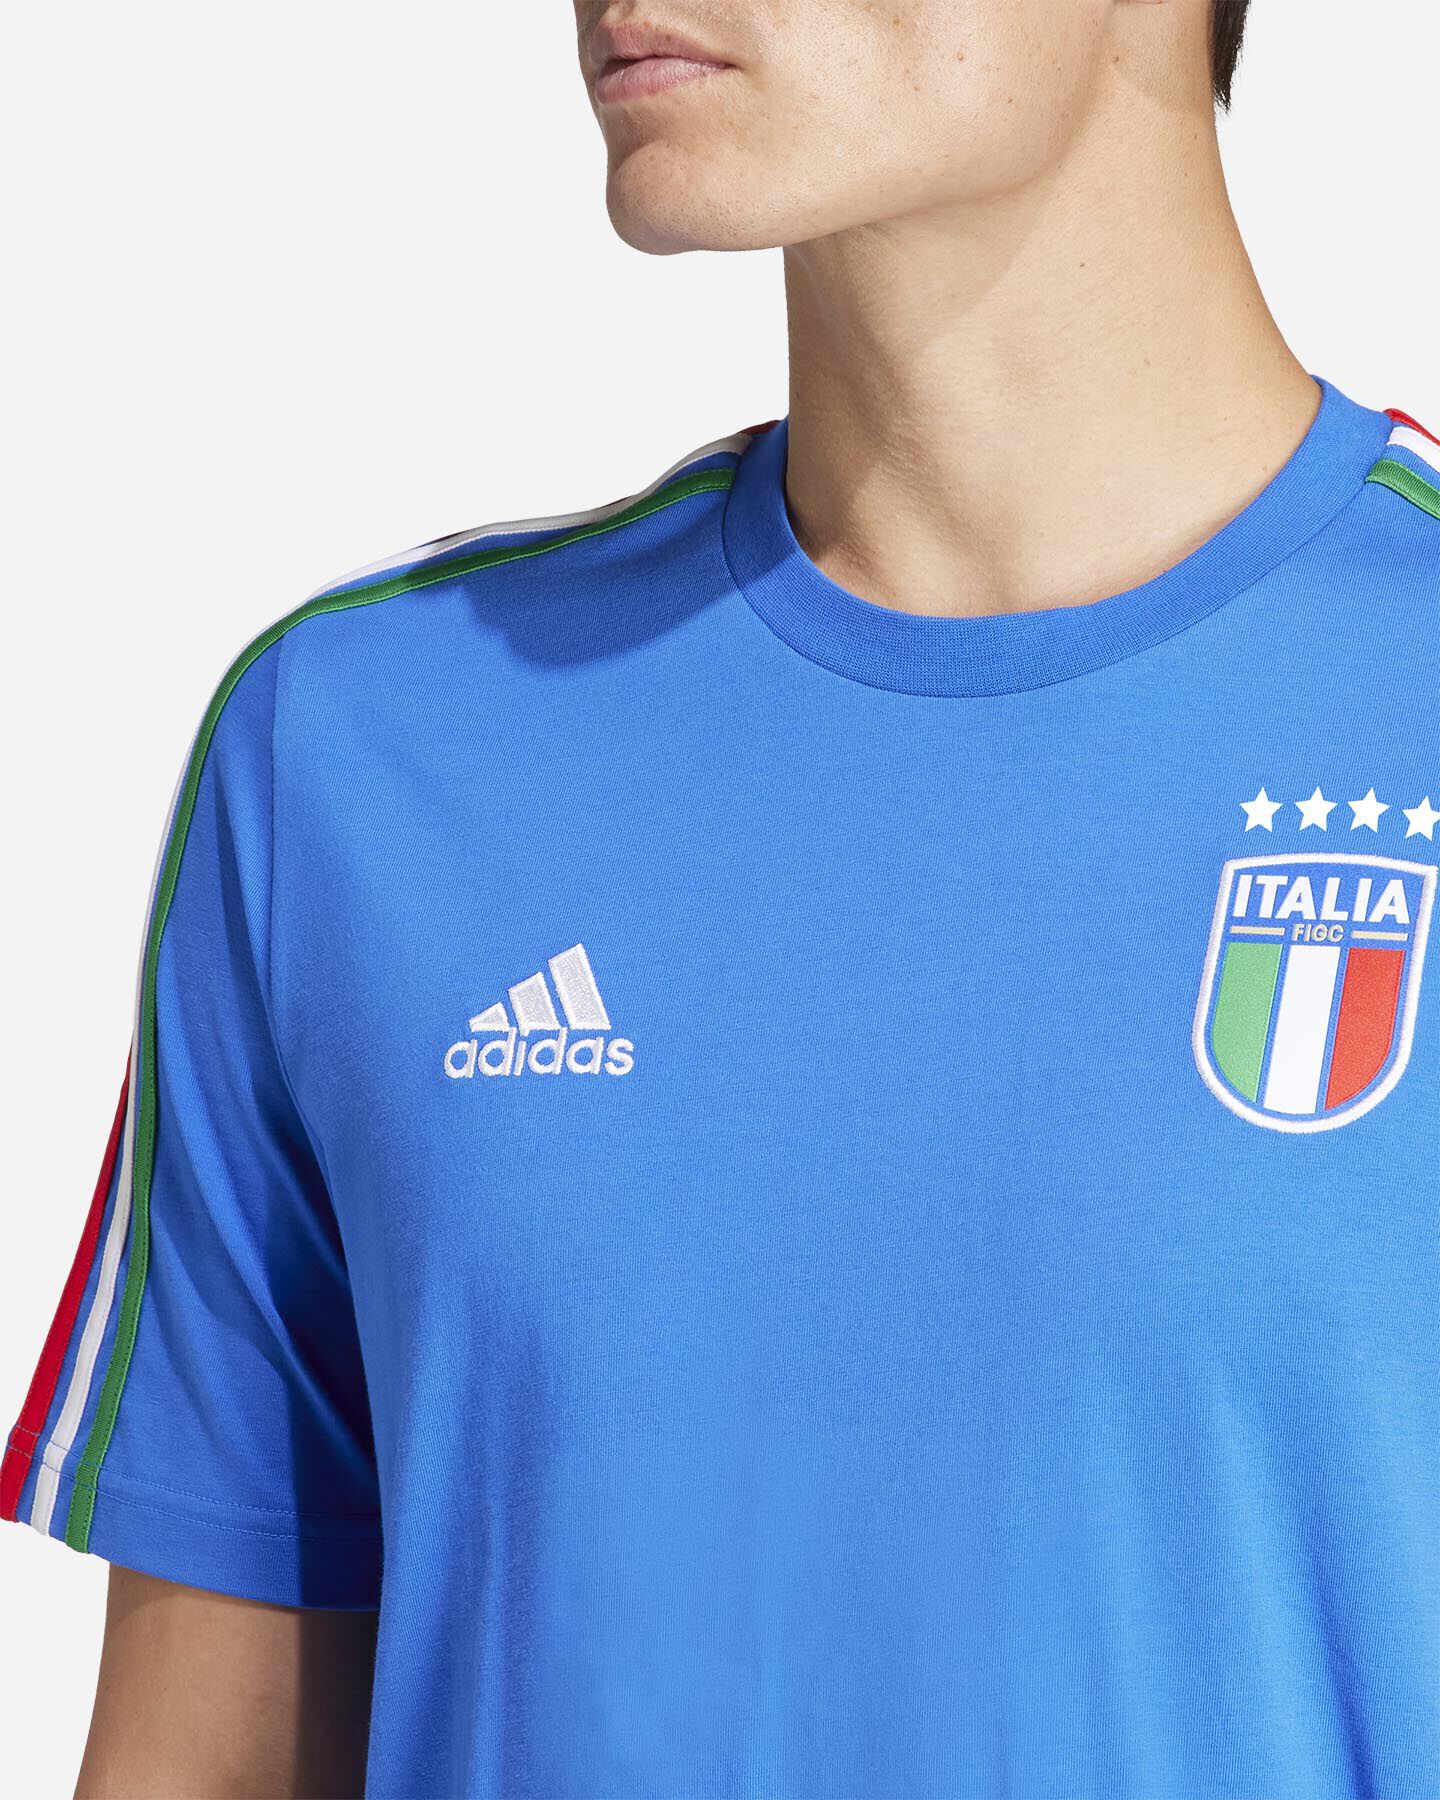  Abbigliamento calcio ADIDAS ITALIA M FIGC DNA M S5657560|UNI|M scatto 4